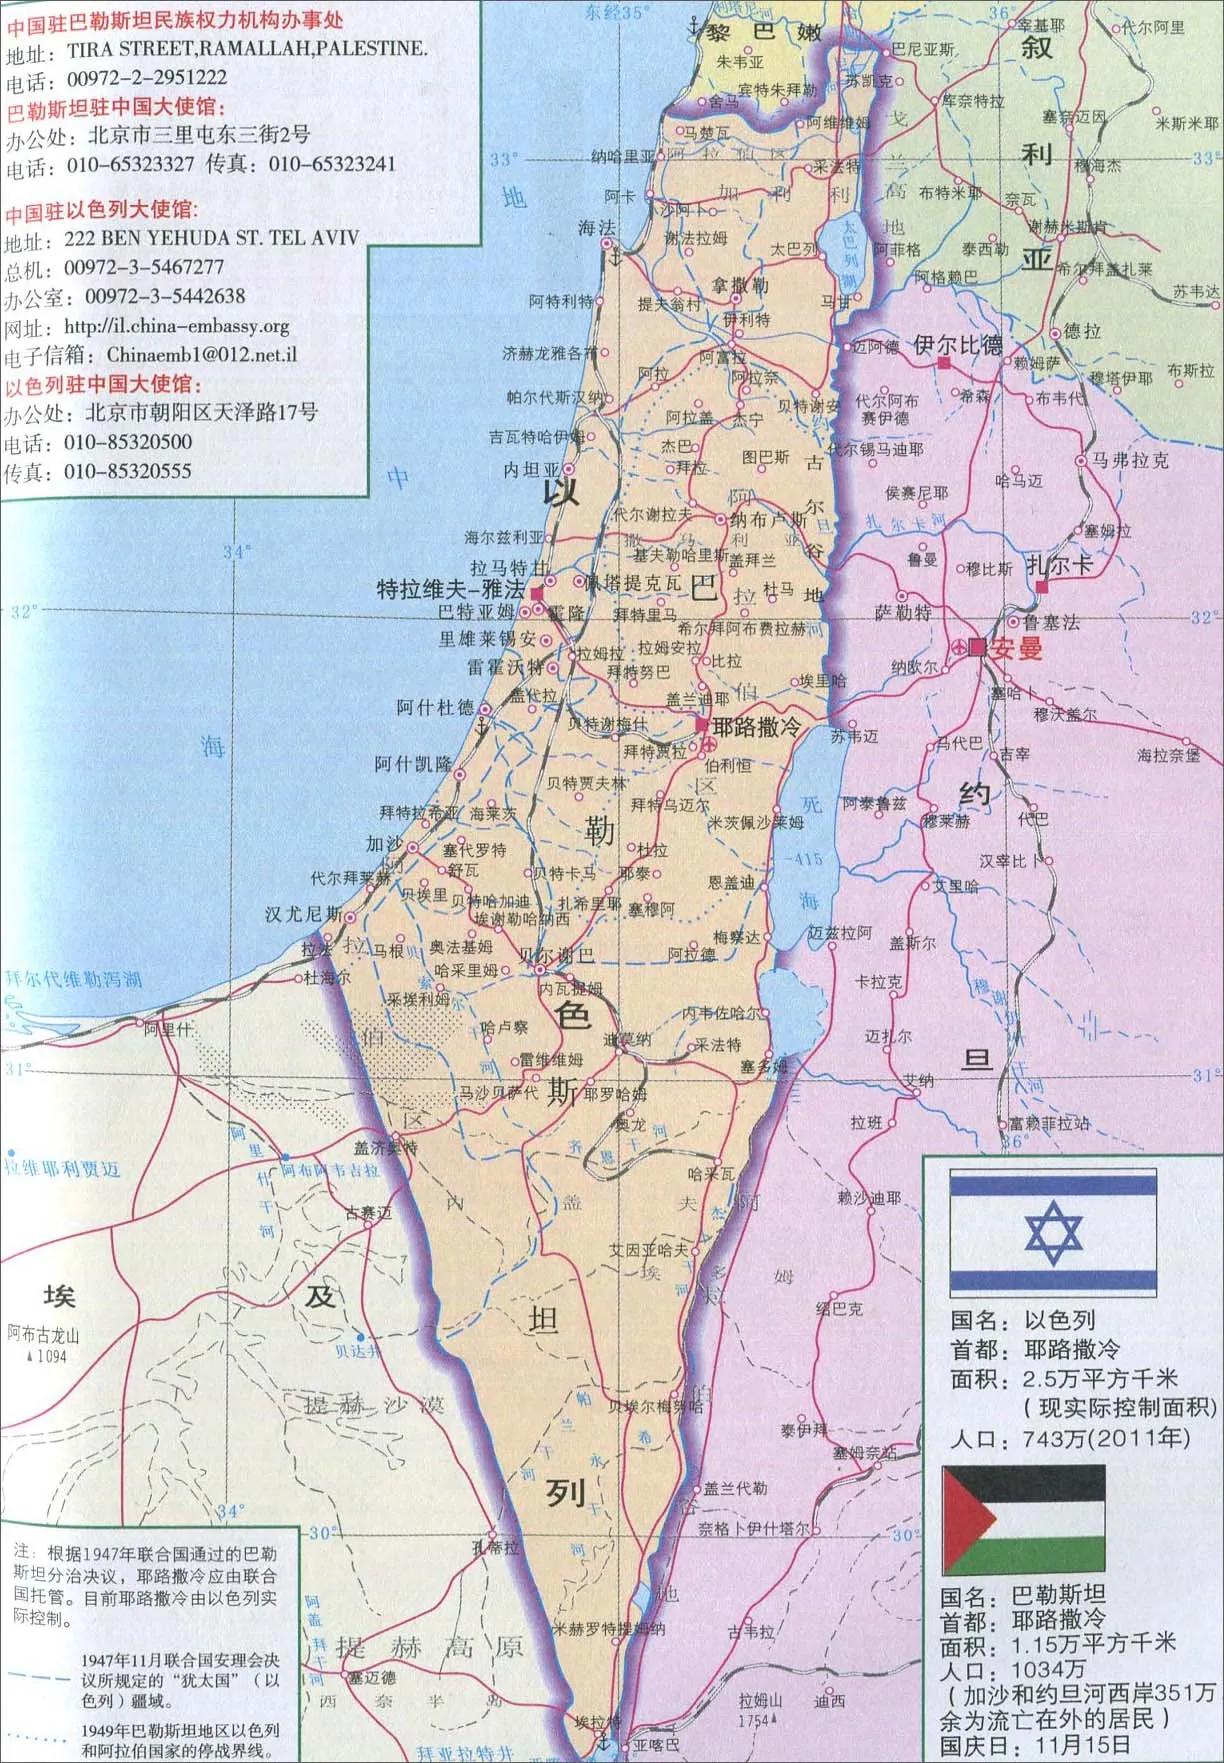 巴勒斯坦建国(如果巴勒斯坦放弃建国,人口和土地并入以色列,结果会不